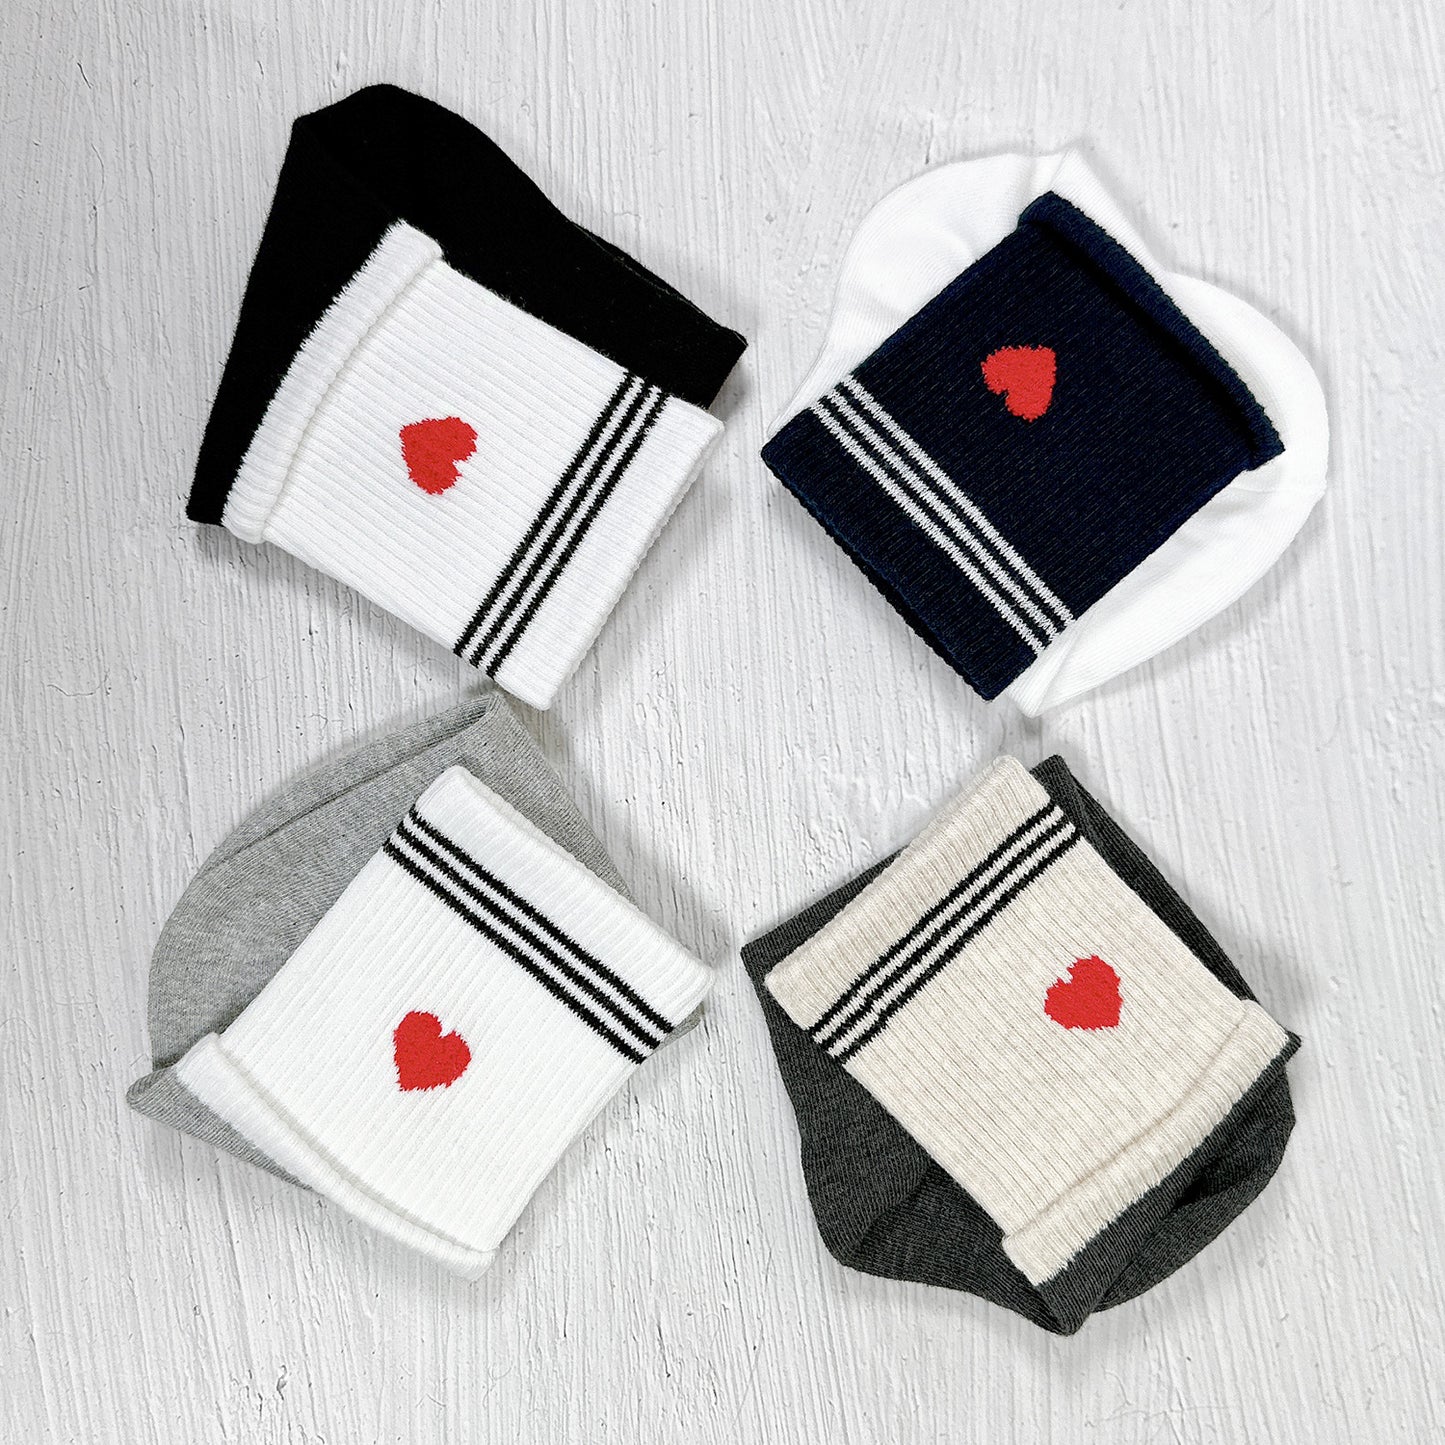 Women's Daily Heart Socks - Made in Korea